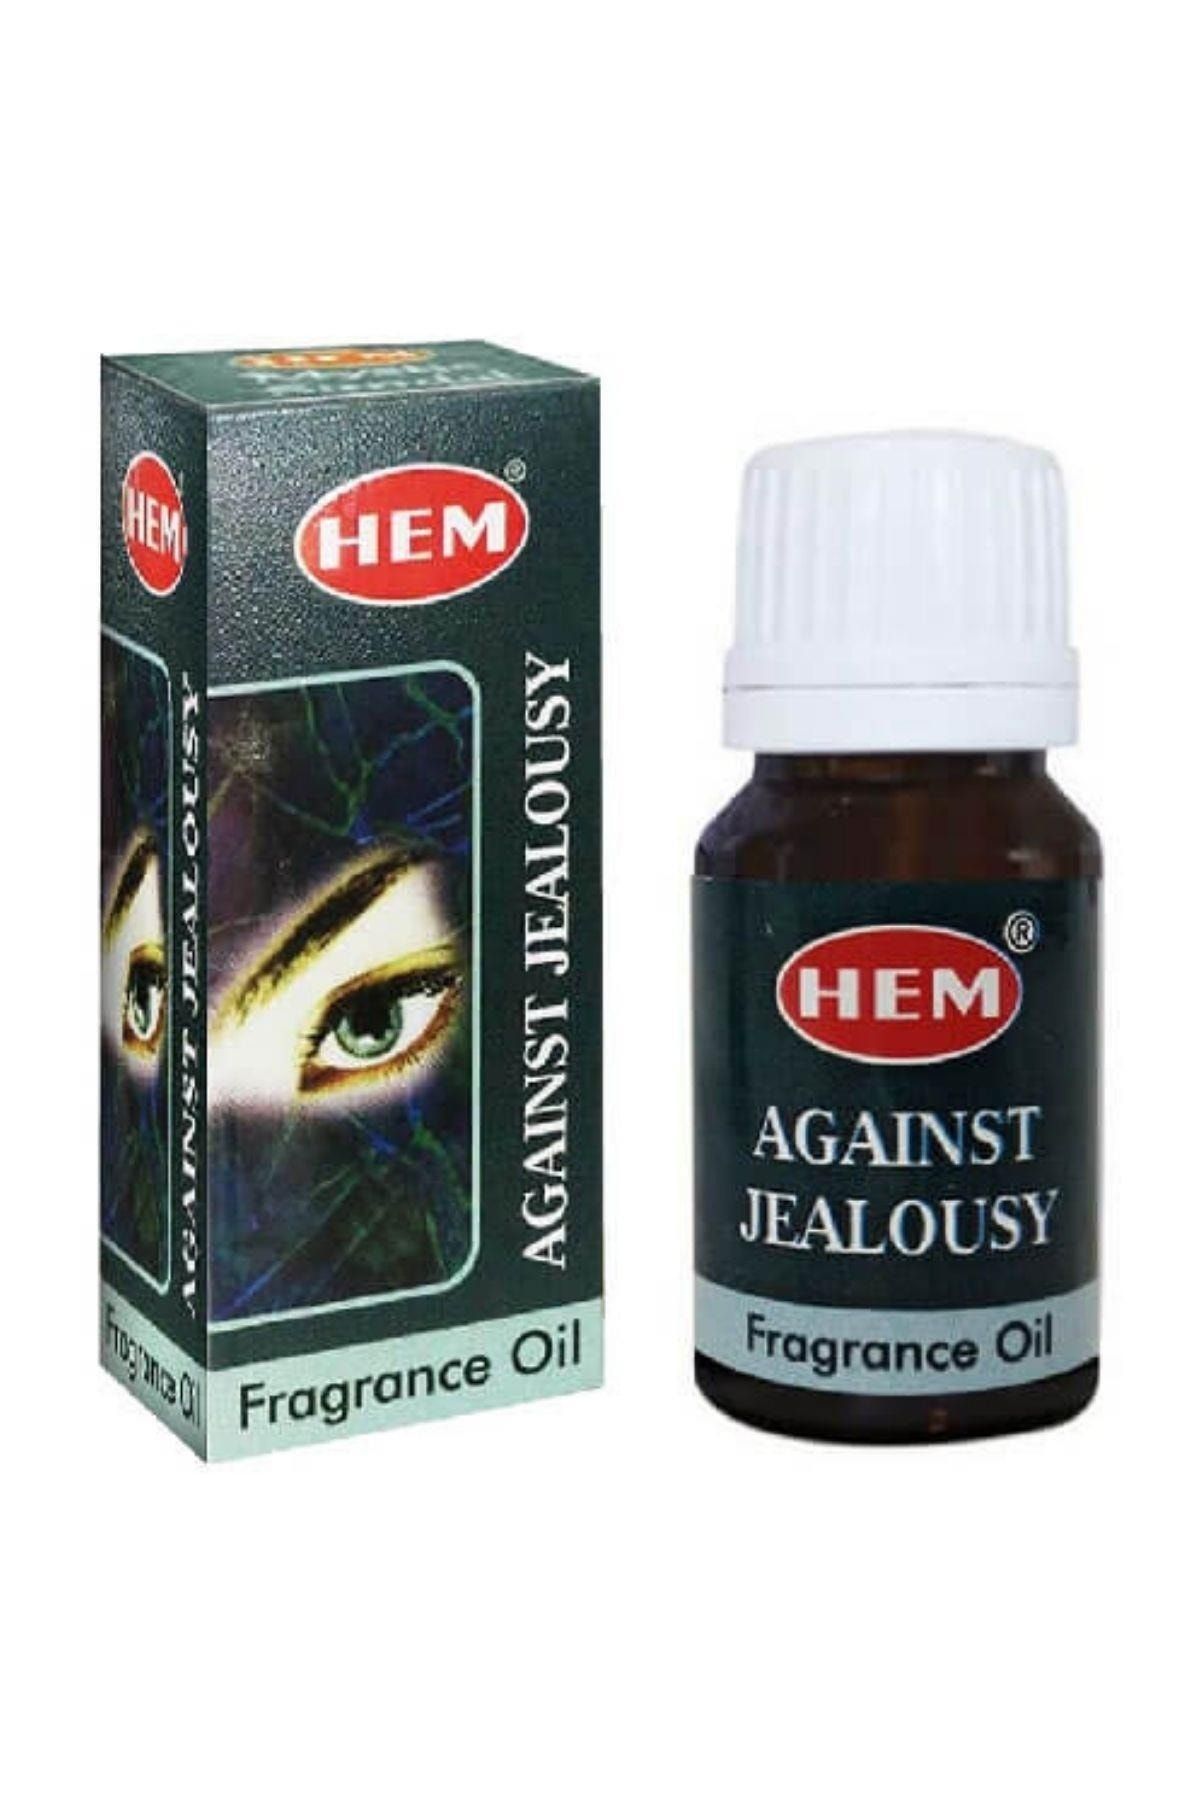 Hem Against Jealousy Fragrance Oil 10ml